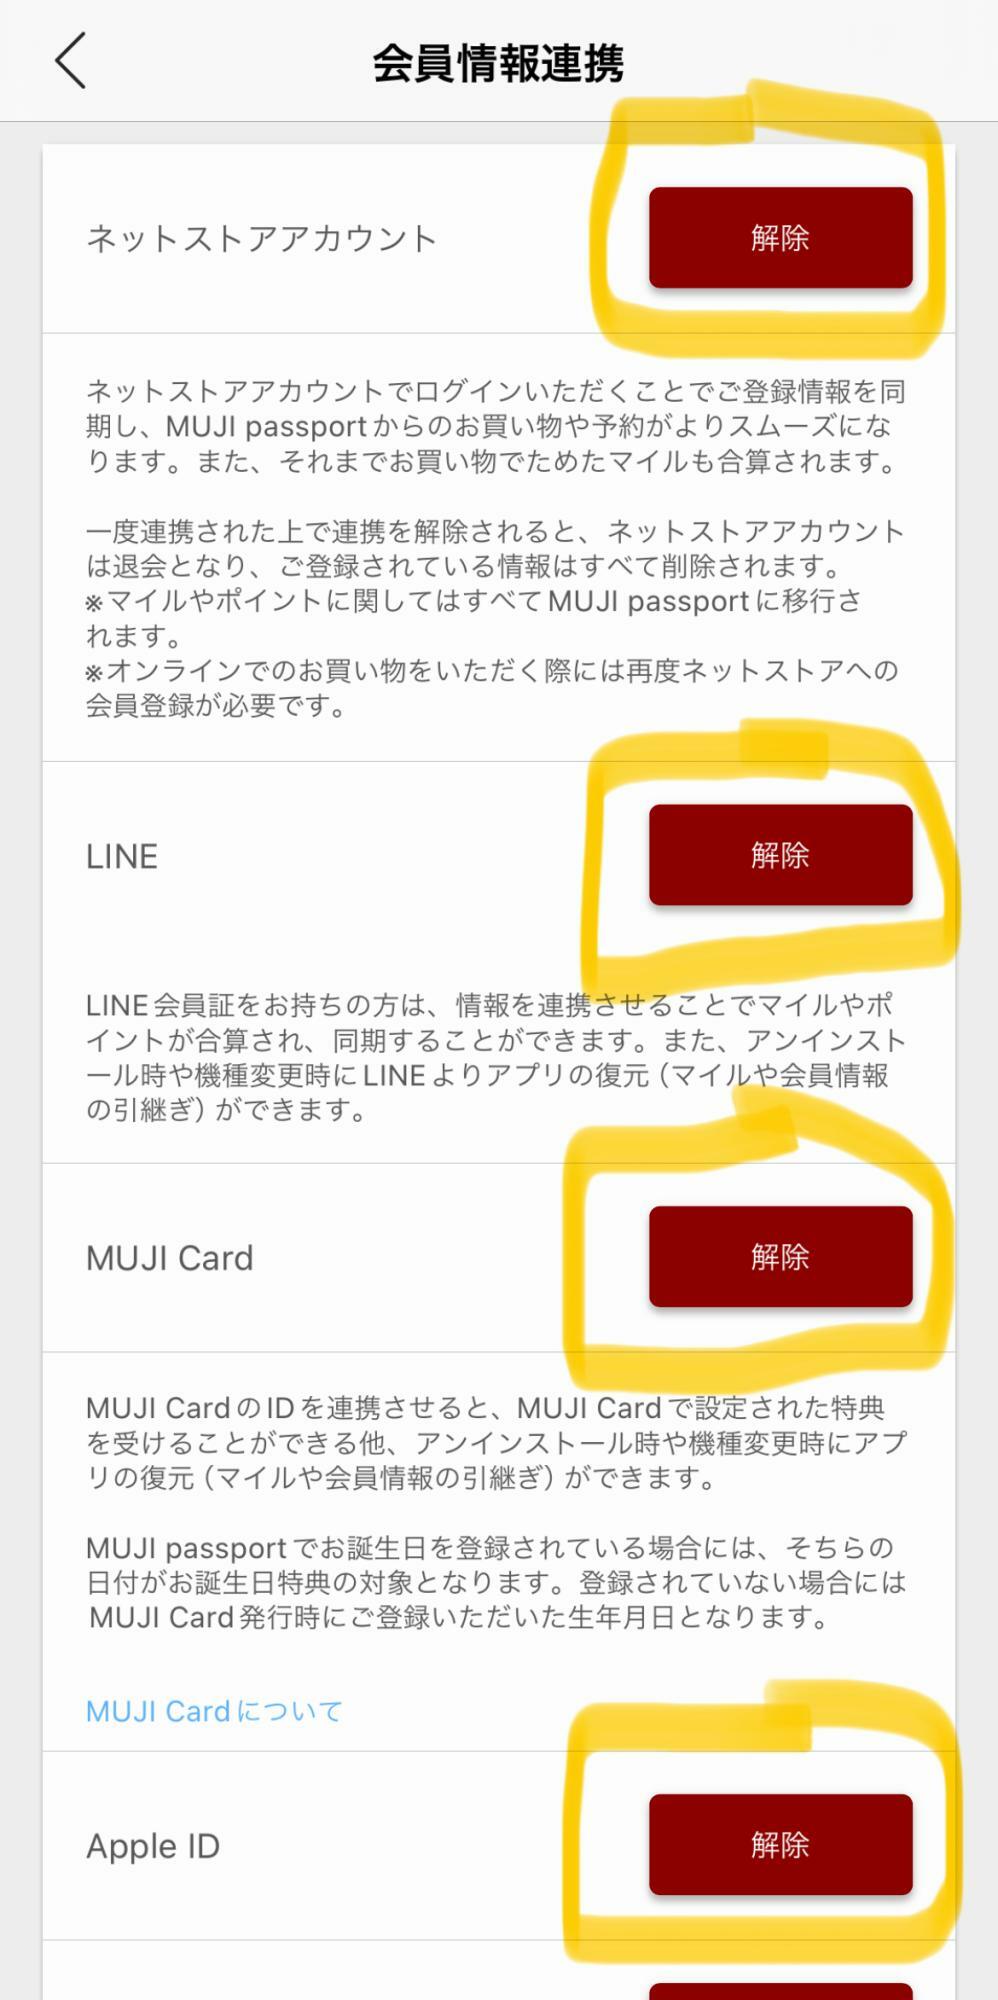 アプリ画面 (MUJI passport)